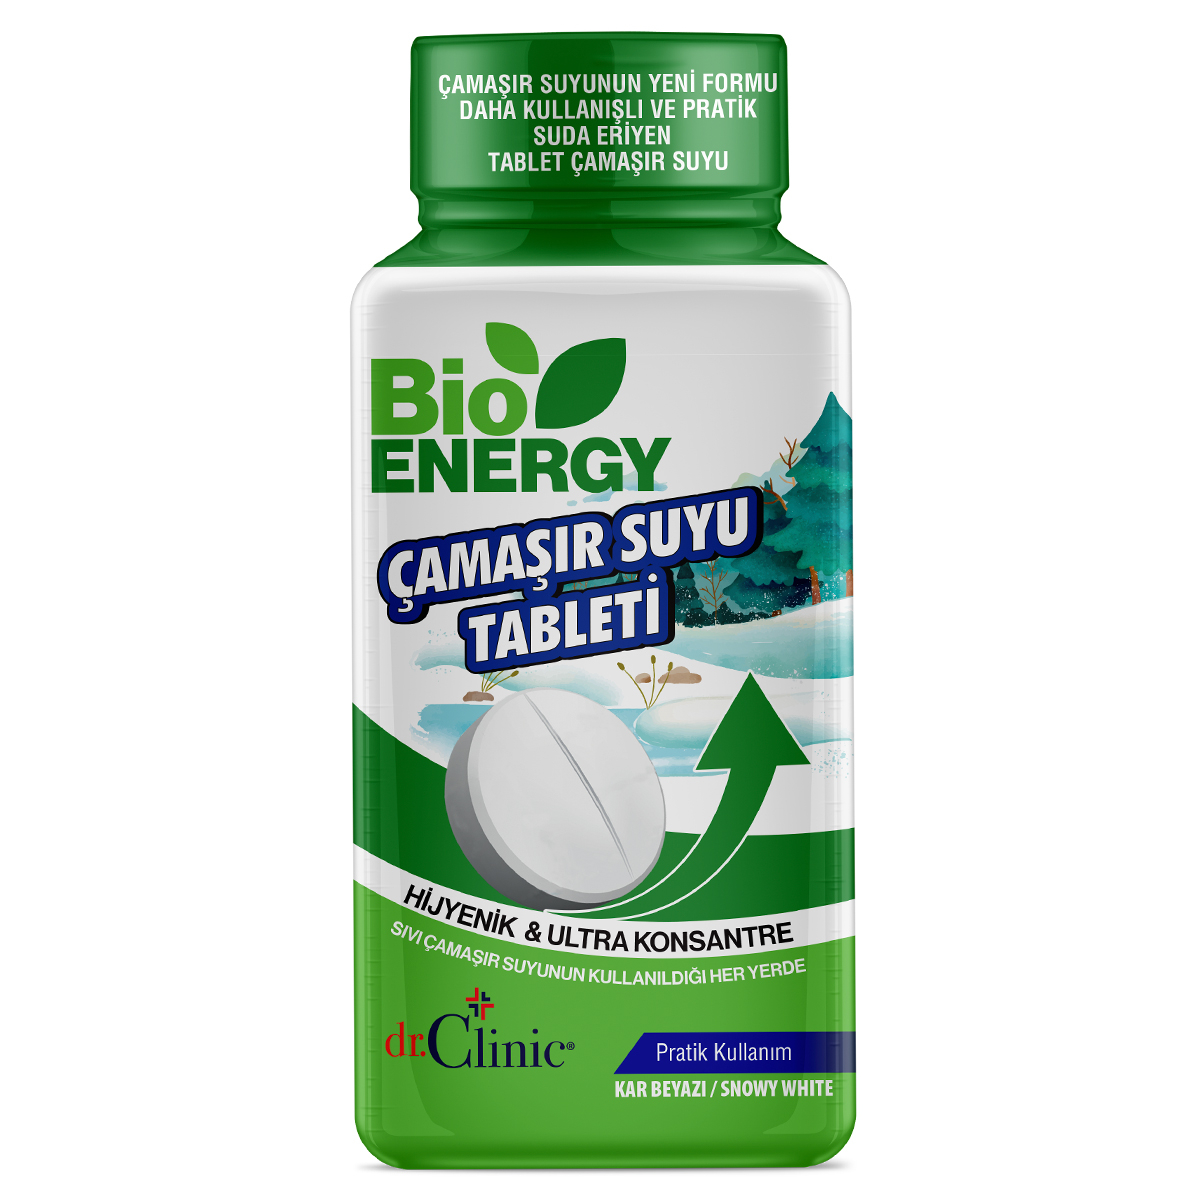 Bioenergy Tablet Çamaşır Suyu Kar Beyazı 32 ADET